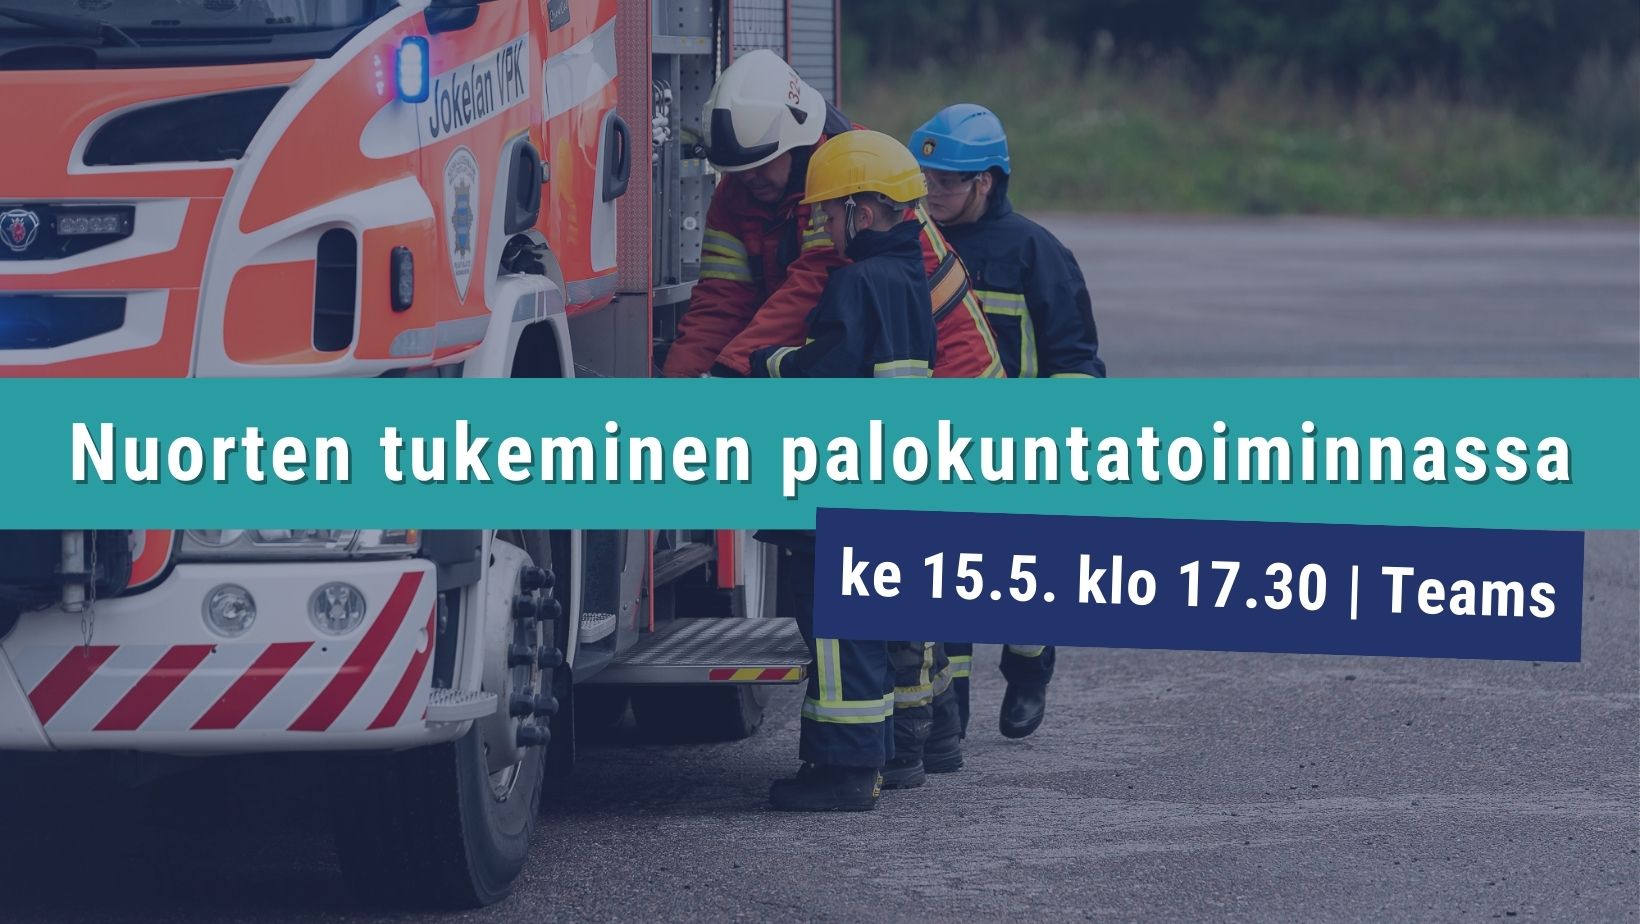 Kaksi palokuntanuorta ja kouluttaja paloauton vierellä. Teksti: Nuorten tukeminen palokuntatoiminnassa ke 15.5. klo 17.30 Teams.